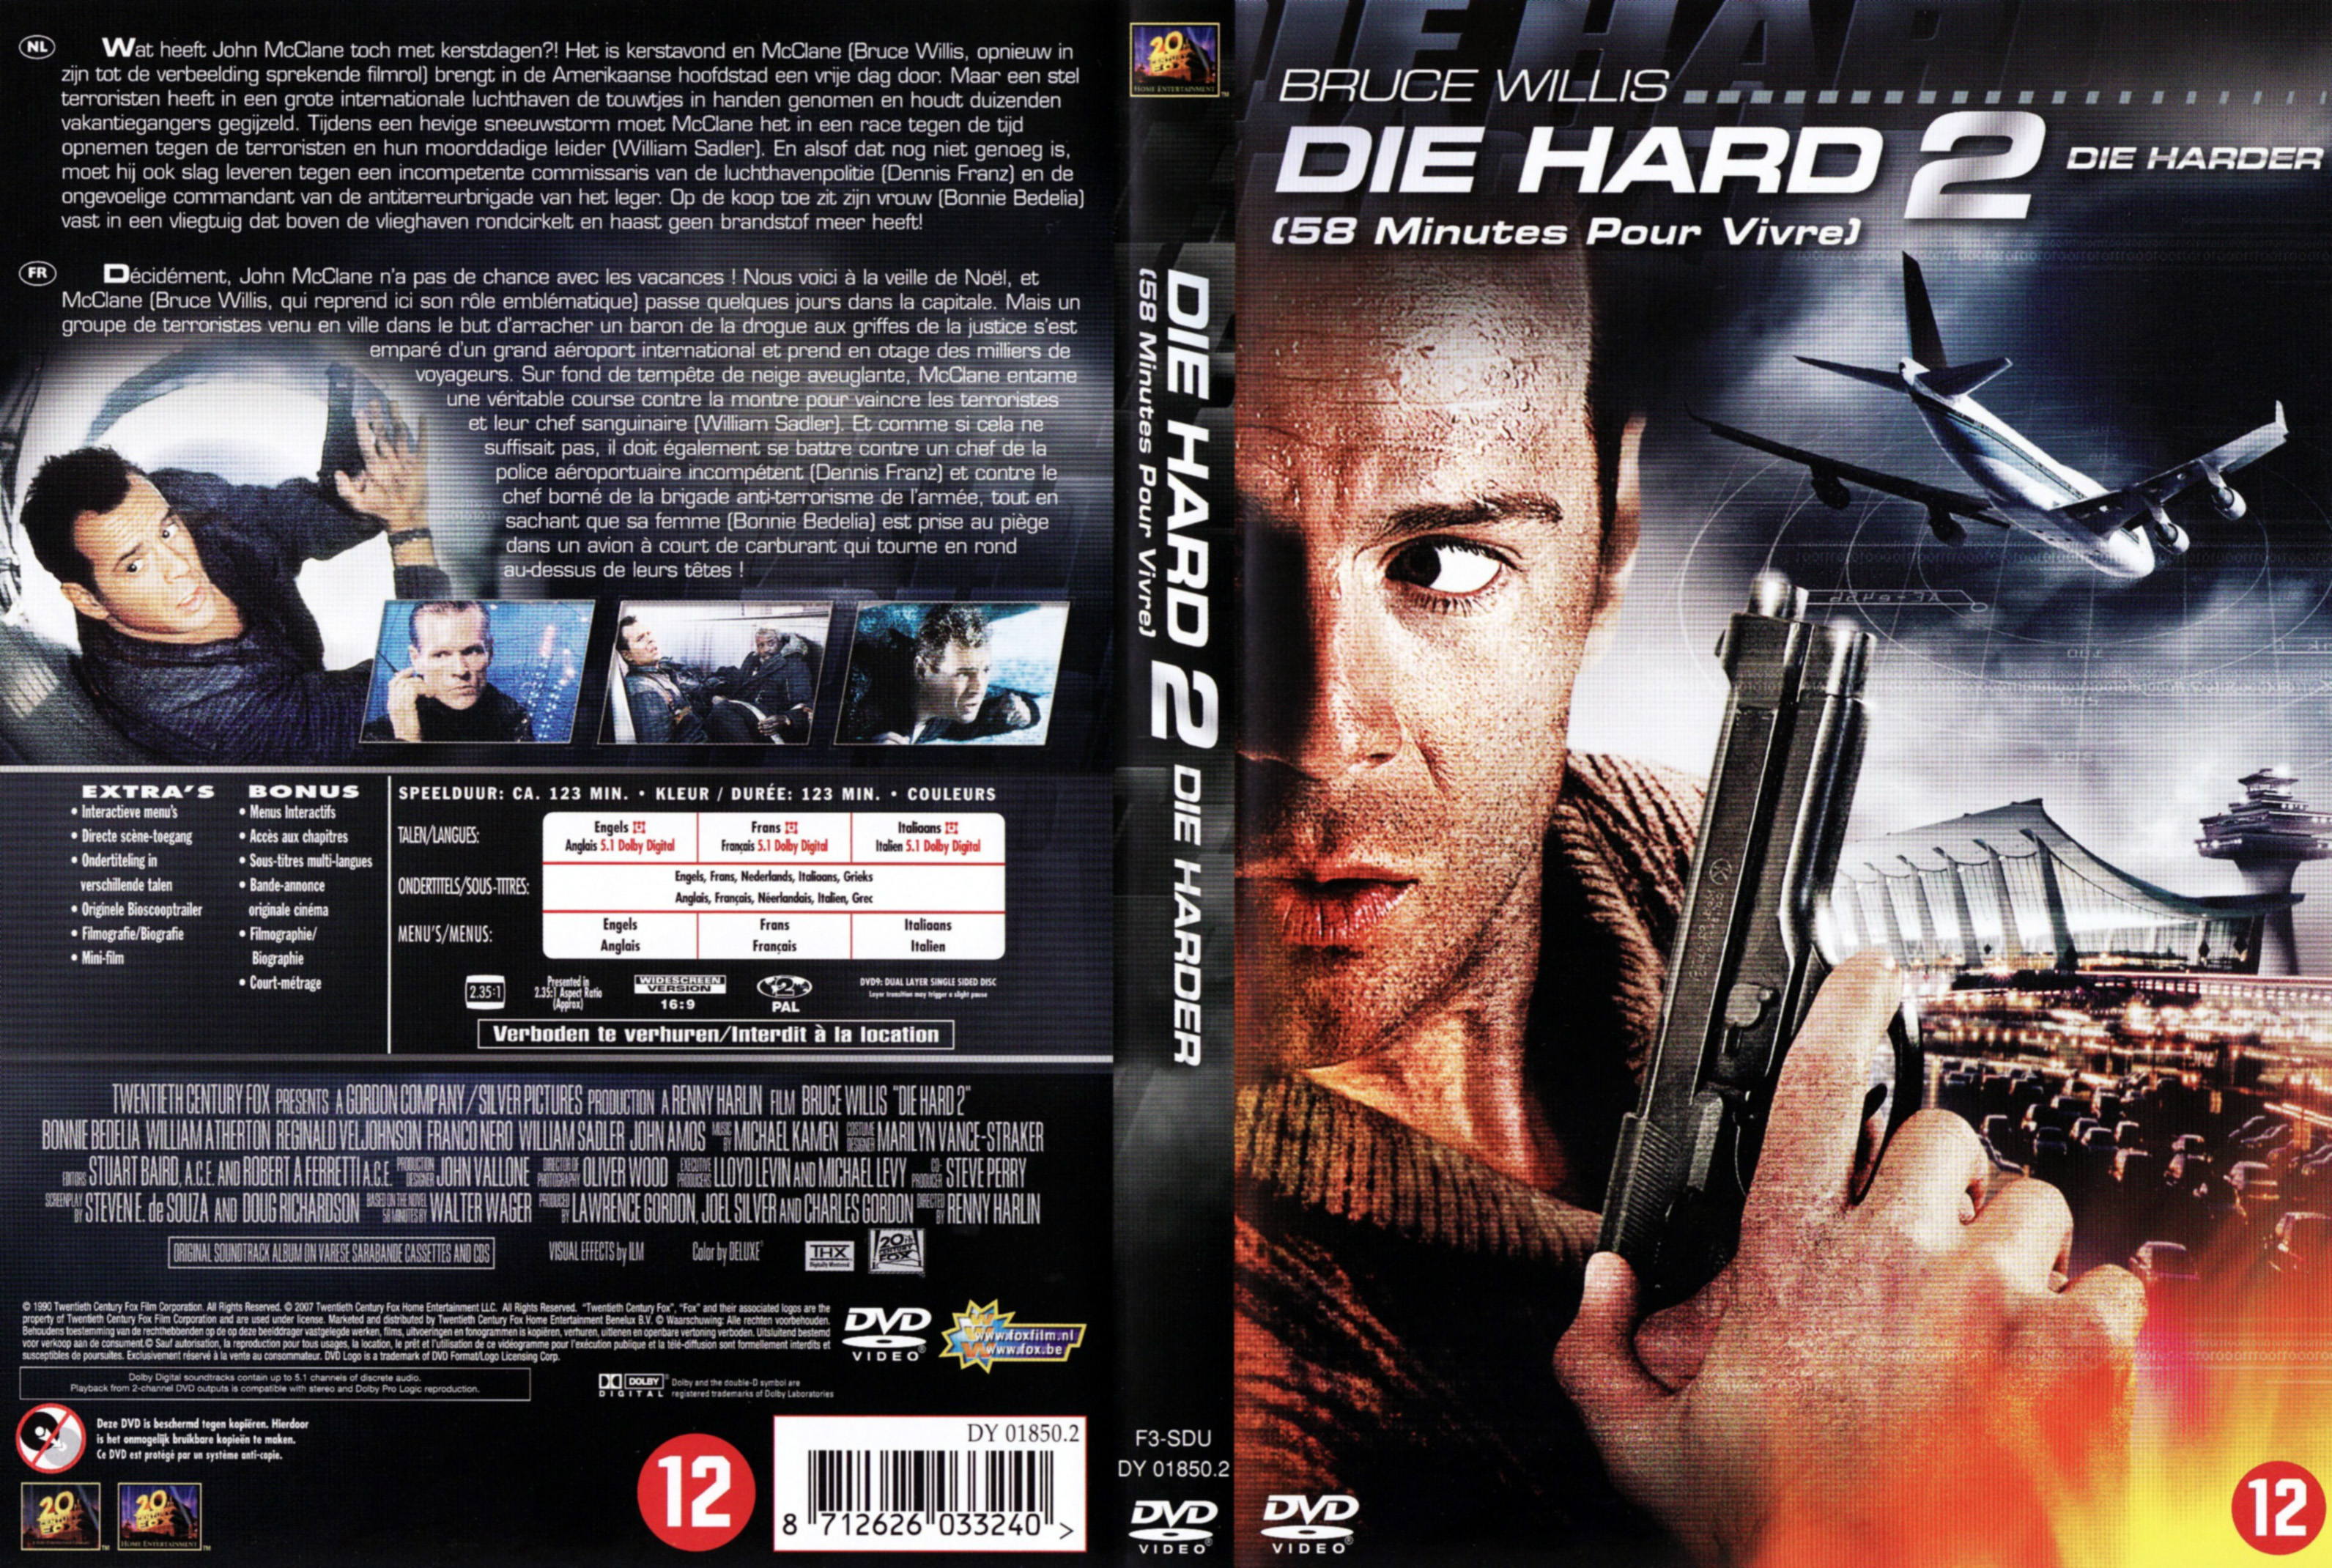 Jaquette DVD Die hard 2 - 58 minutes pour vivre